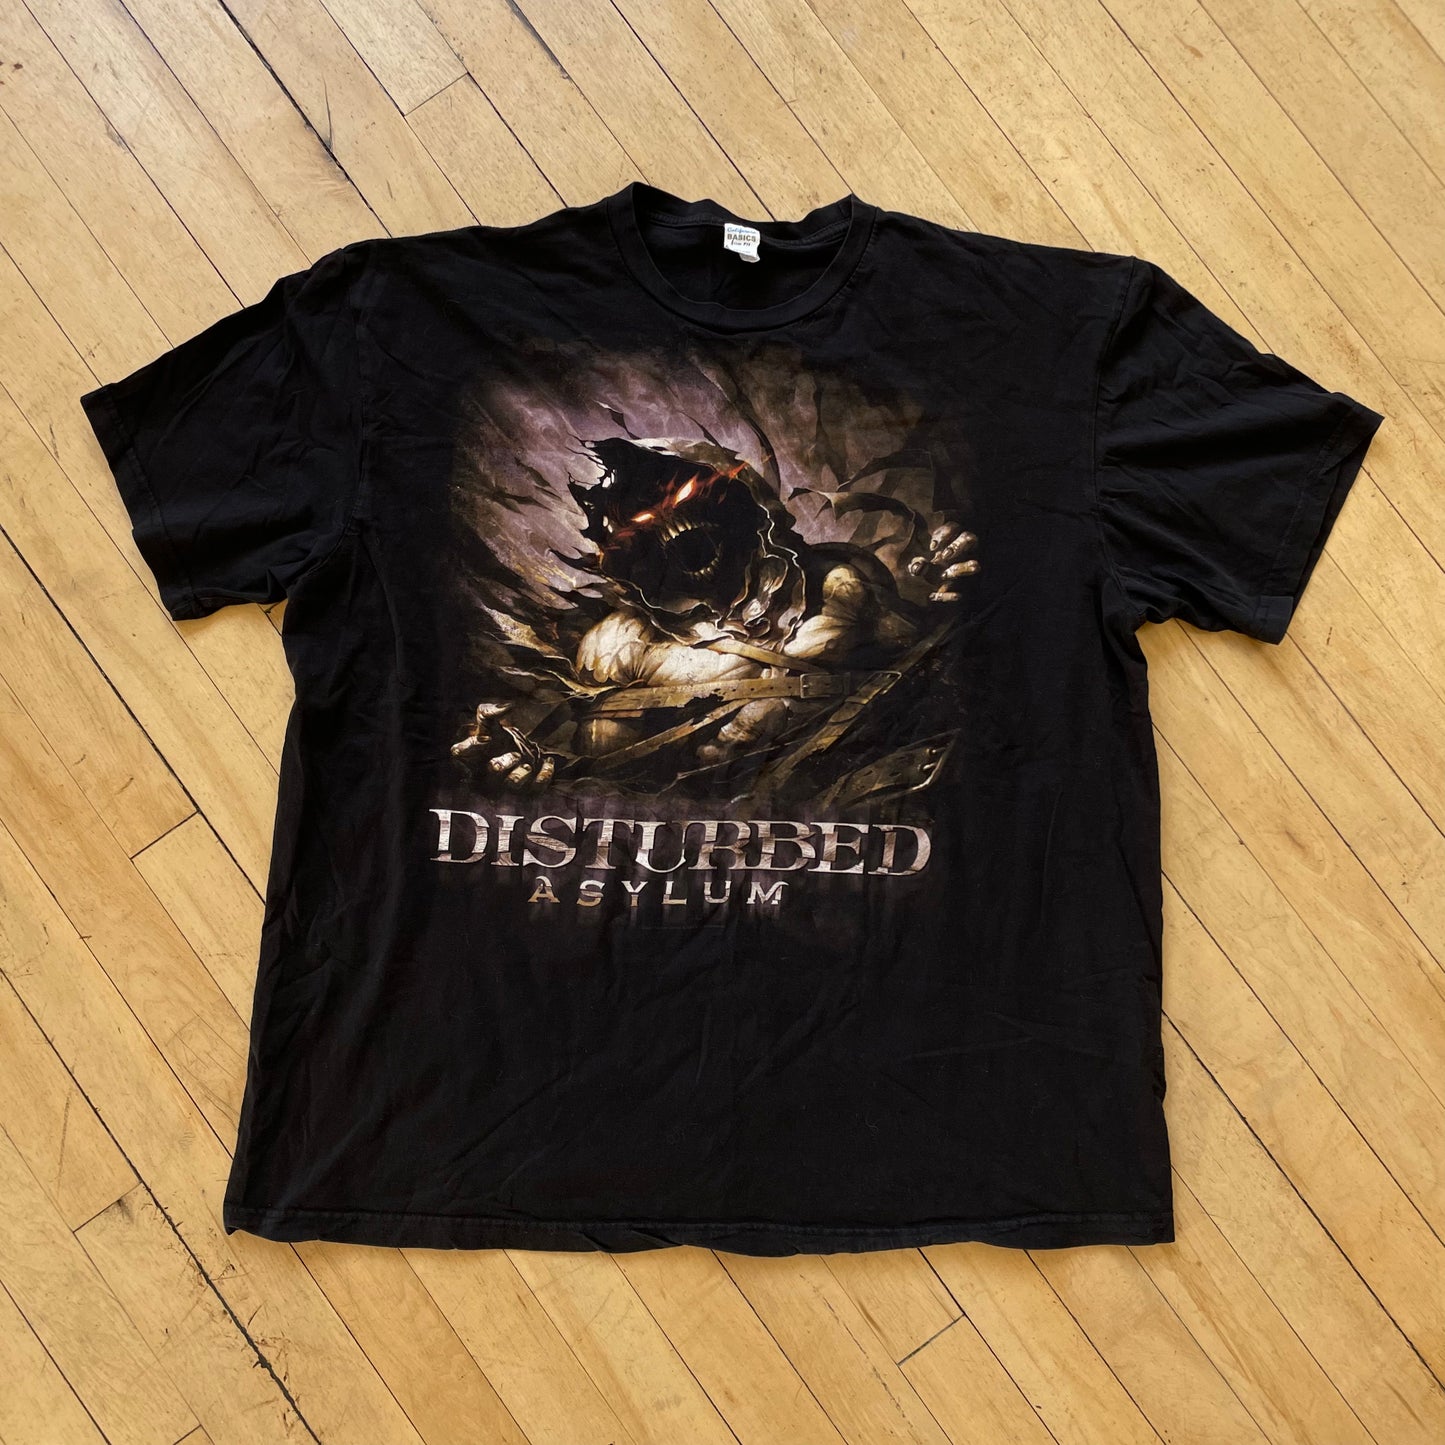 2000s Disturbed Asylum Band T-shirt Sz XL